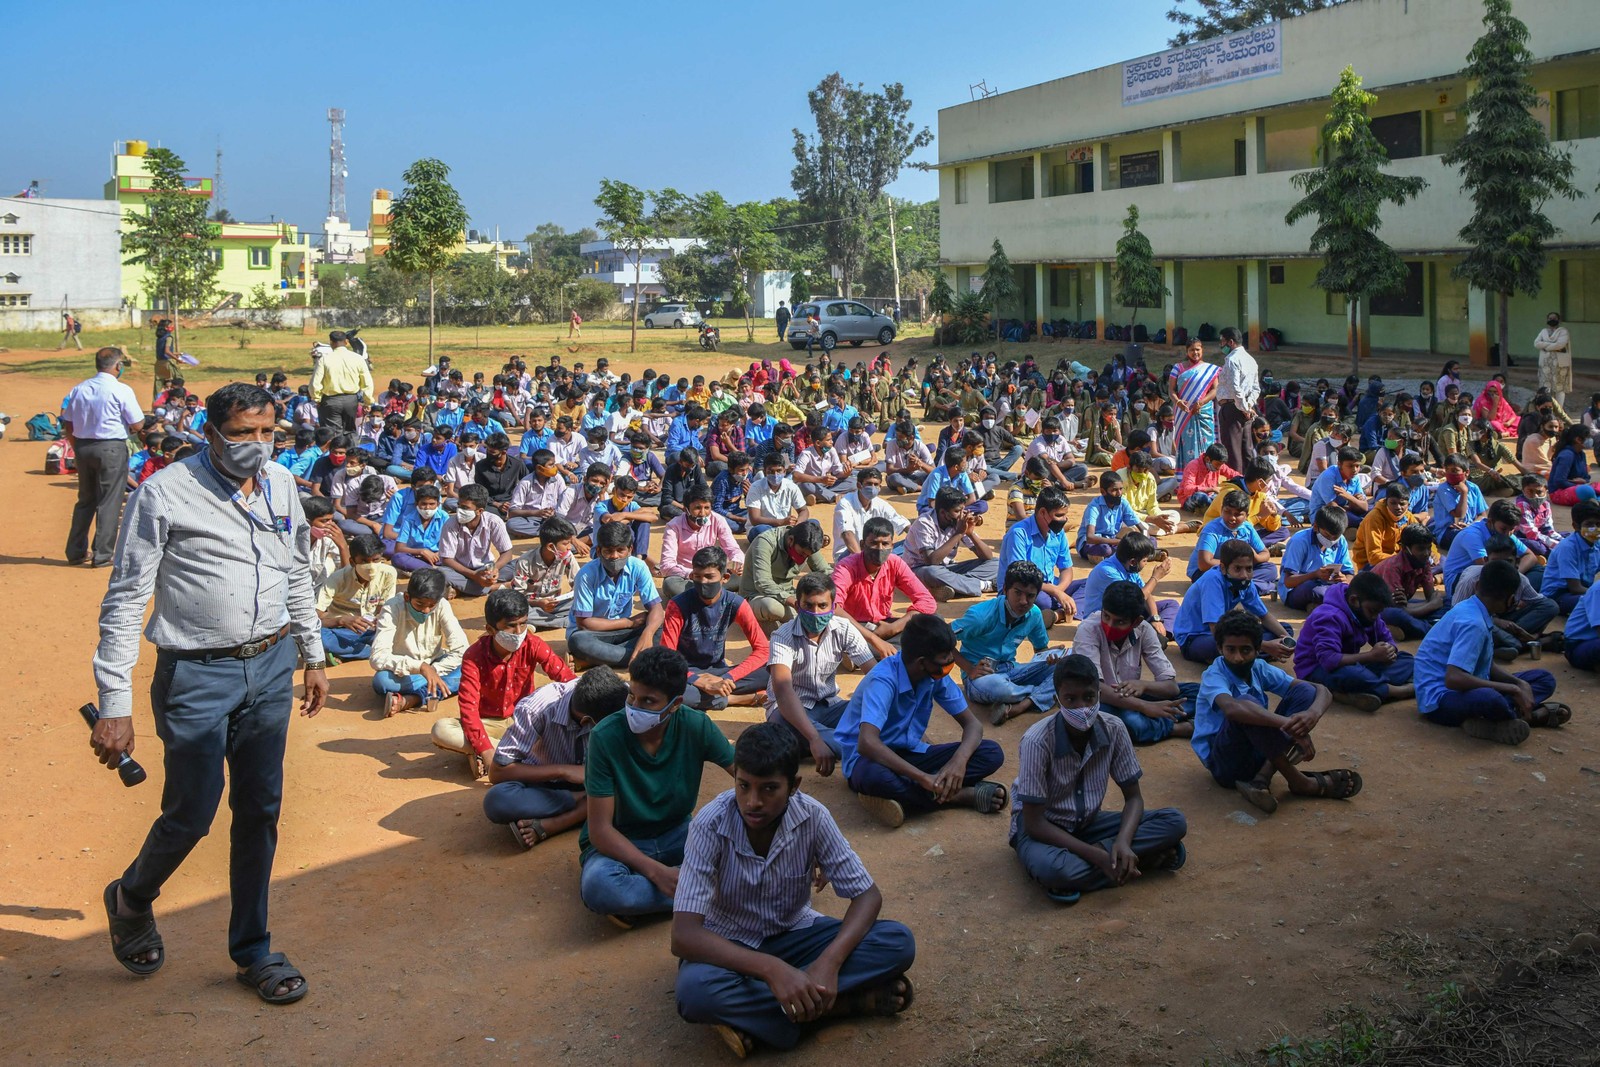 Estudantes entre 15 e 18 anos esperam para serem vacinados com uma dose da vacina Covaxin contra a Covid-19 durante uma campanha de vacinação em uma escola em Bangalore, na ÍndiaAFP